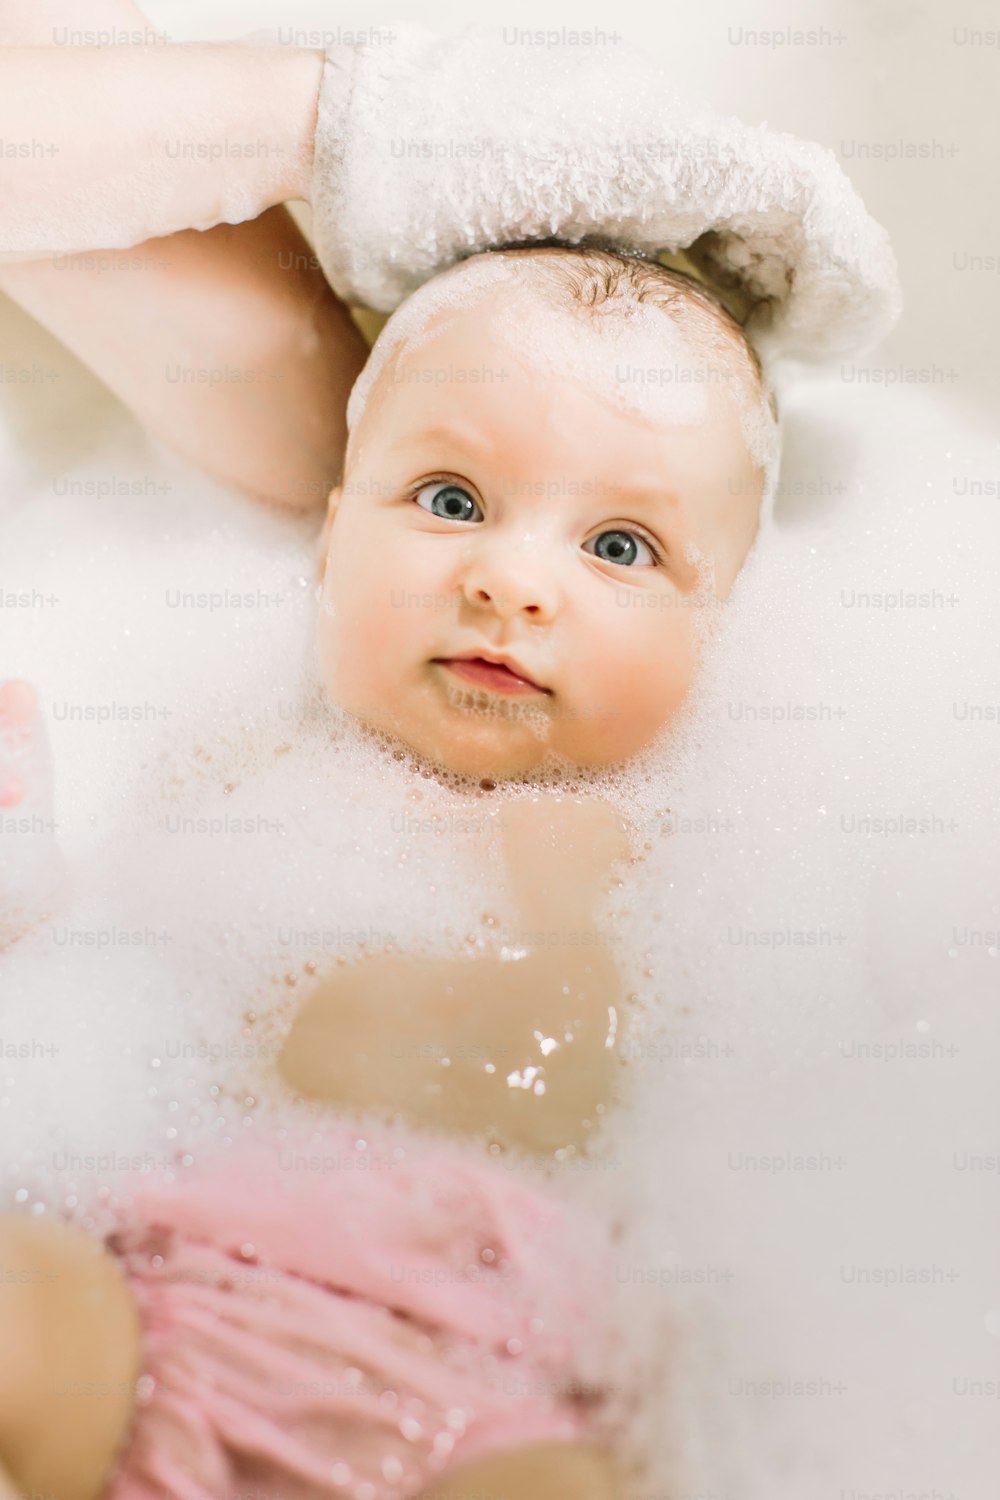 거품 거품을 가지고 노는 목욕을 하는 행복한 웃는 아기. 욕조에 있는 어린 아이. 유아 씻기 및 목욕. 어린 아이들을위한 위생 및 보살핌. 머리에 비누 거품을 가진 사랑스러운 목욕 아기